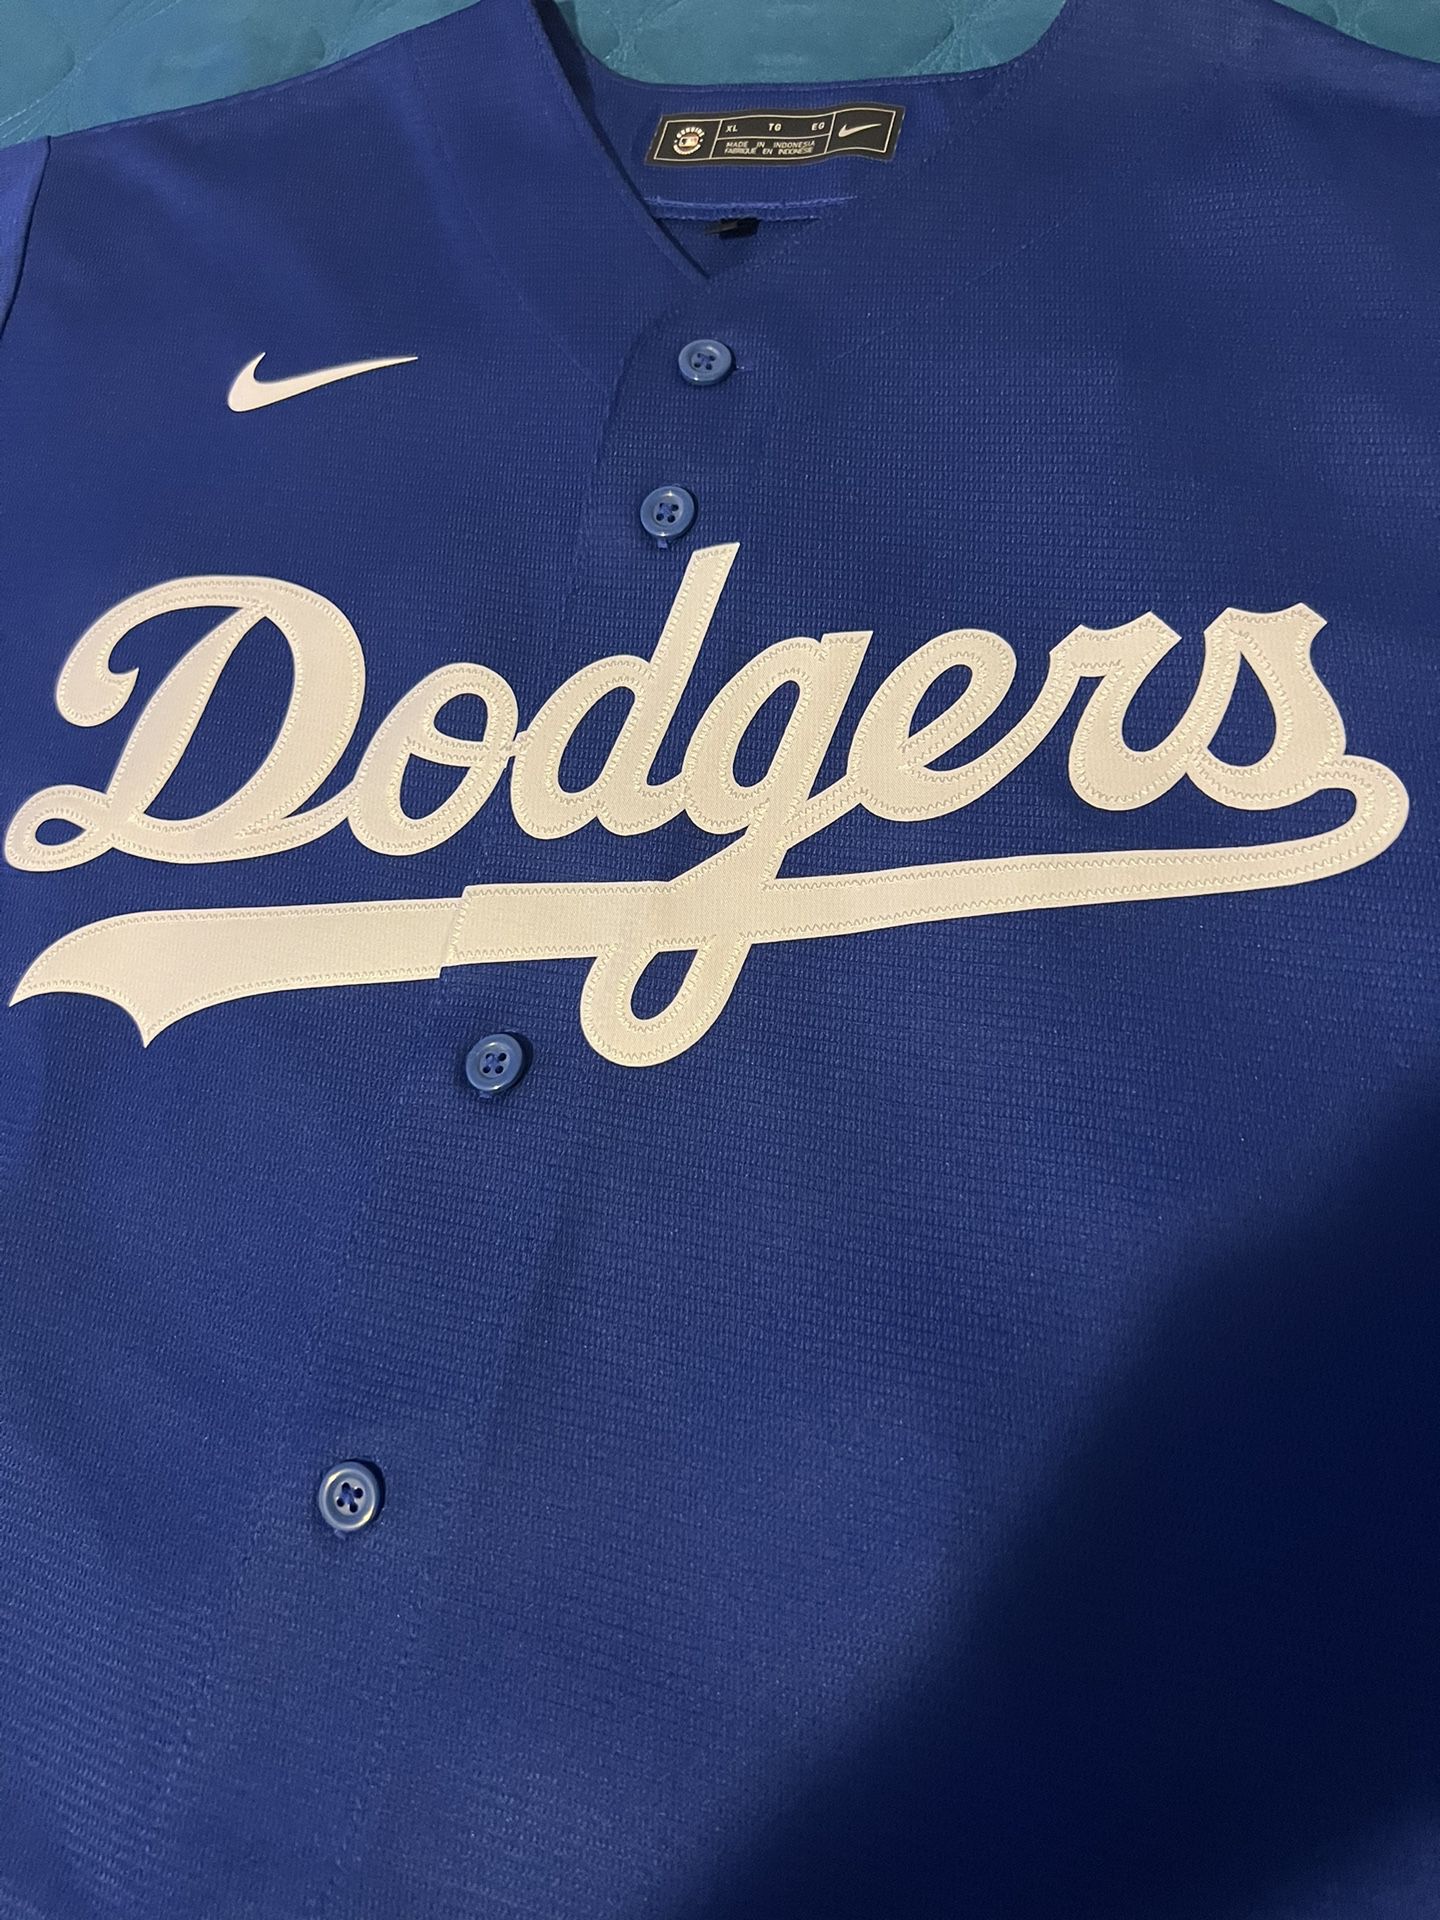 Los Angeles Dodgers Nike Mookie Betts #50 Jersey (Alternate Blue